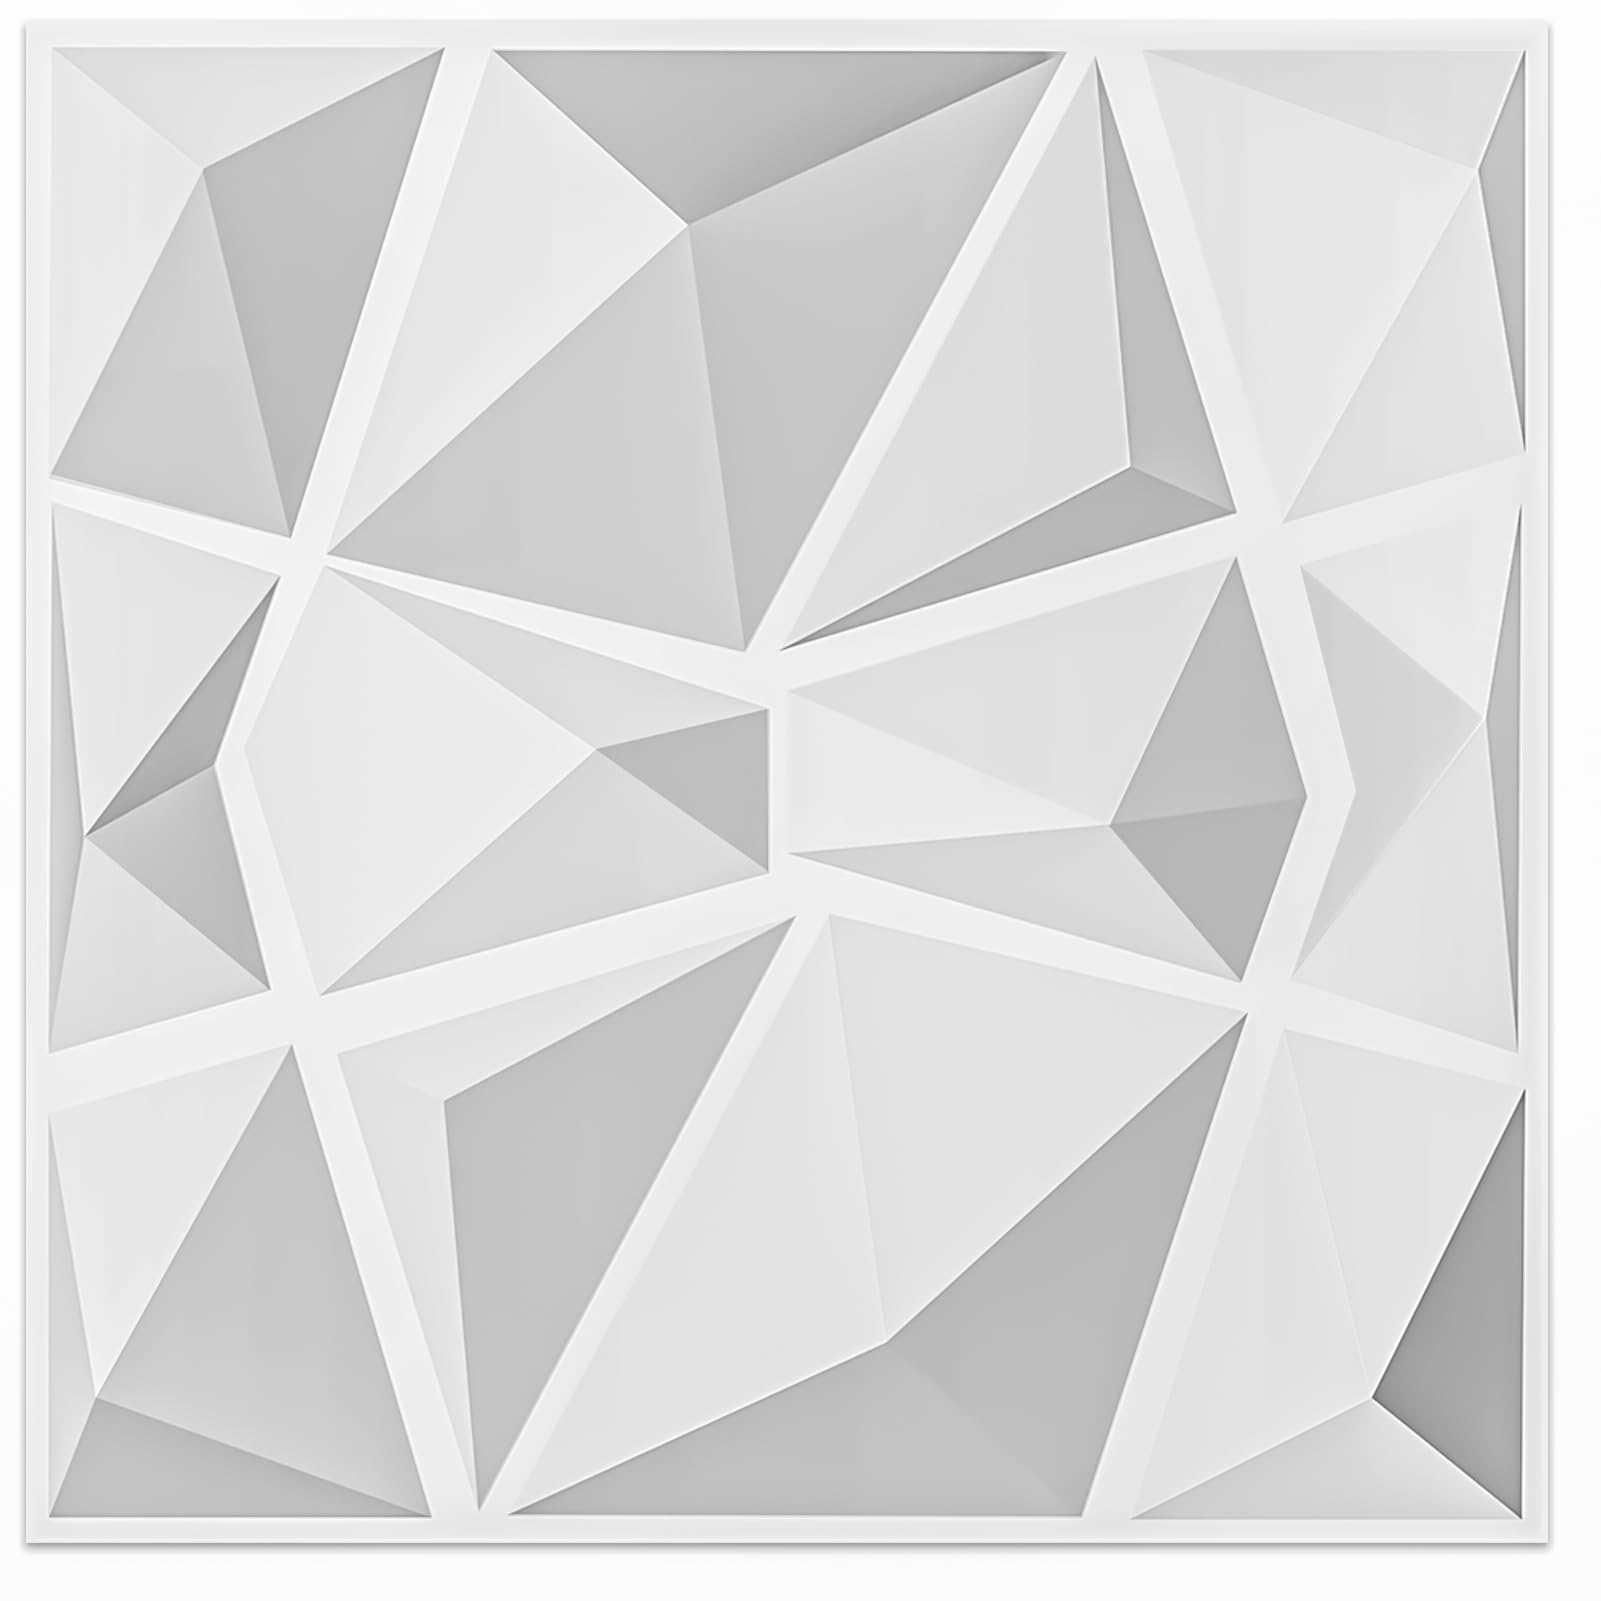 Mua Art3d Textures 3D Wall Panels White Diamond Design Pack of 12 ...